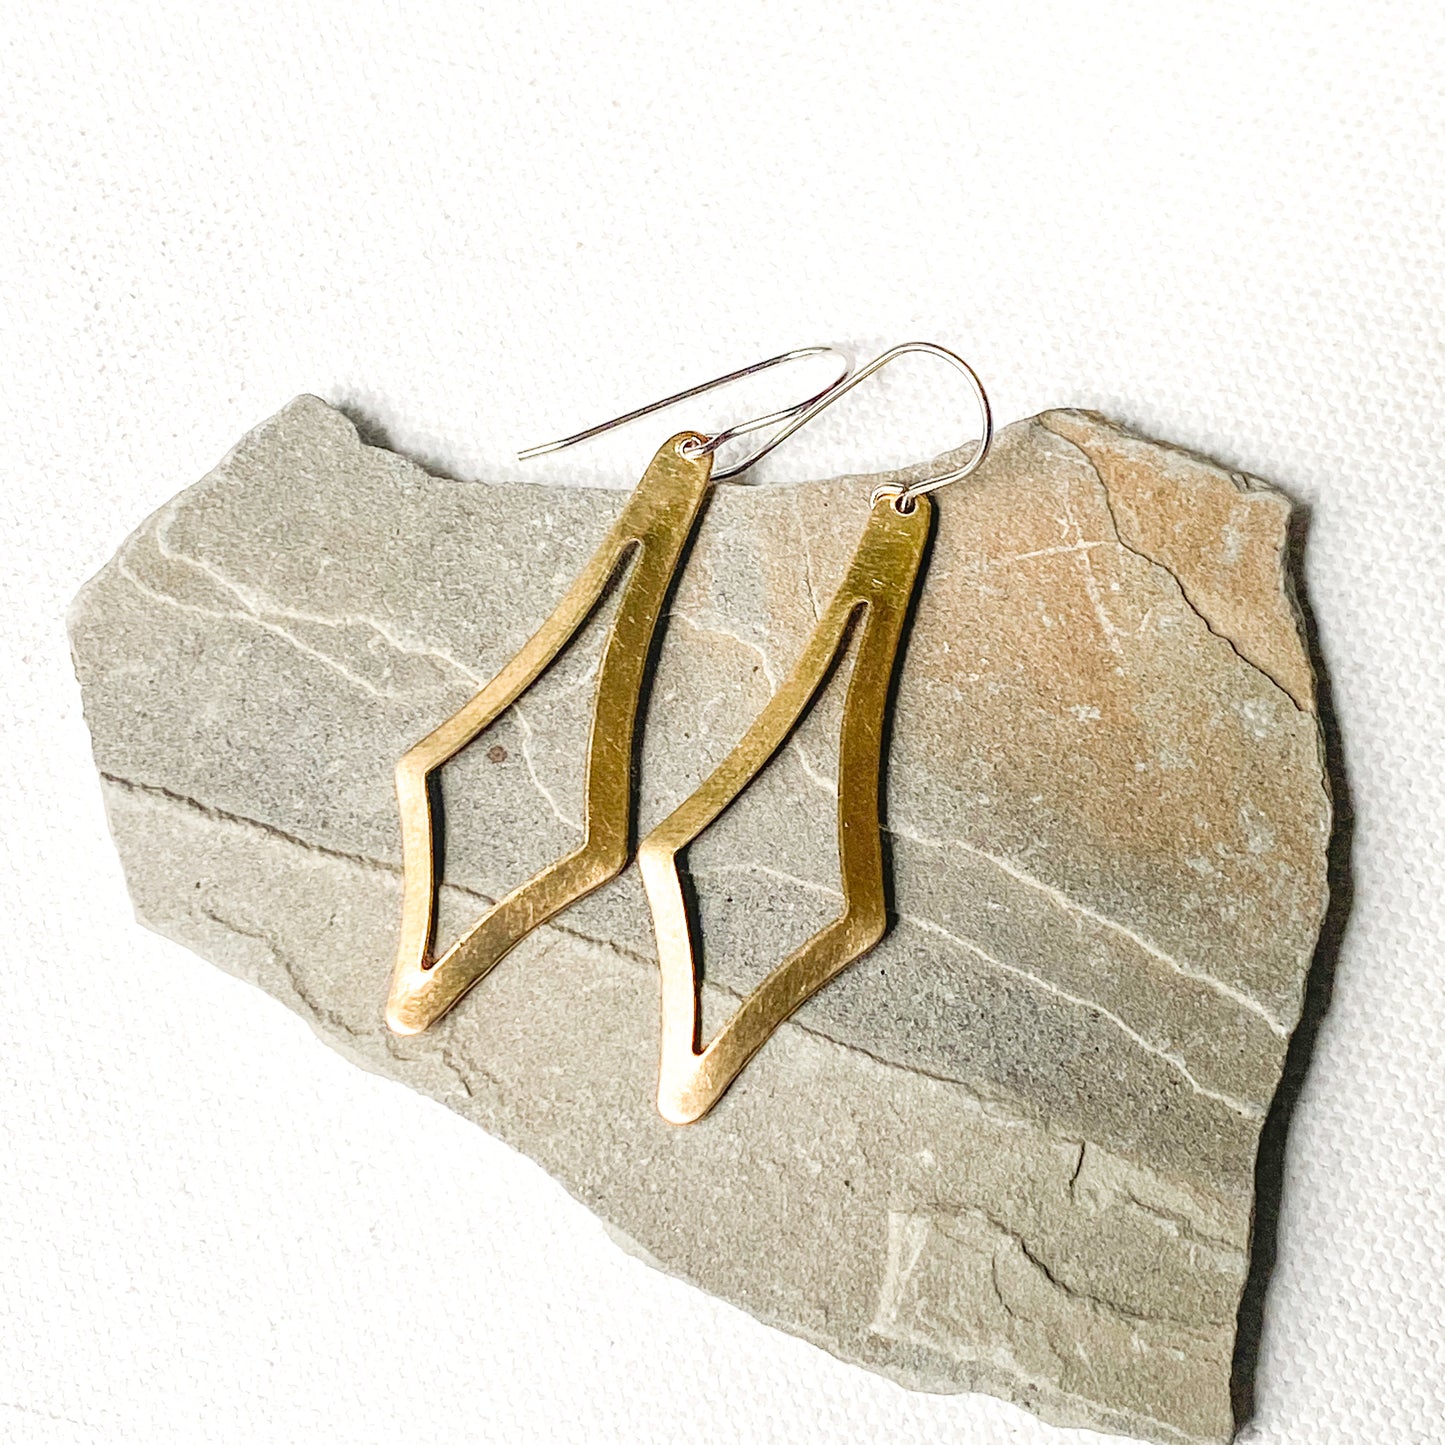 Brass diamond shaped dangle earrings, lightweight long earrings